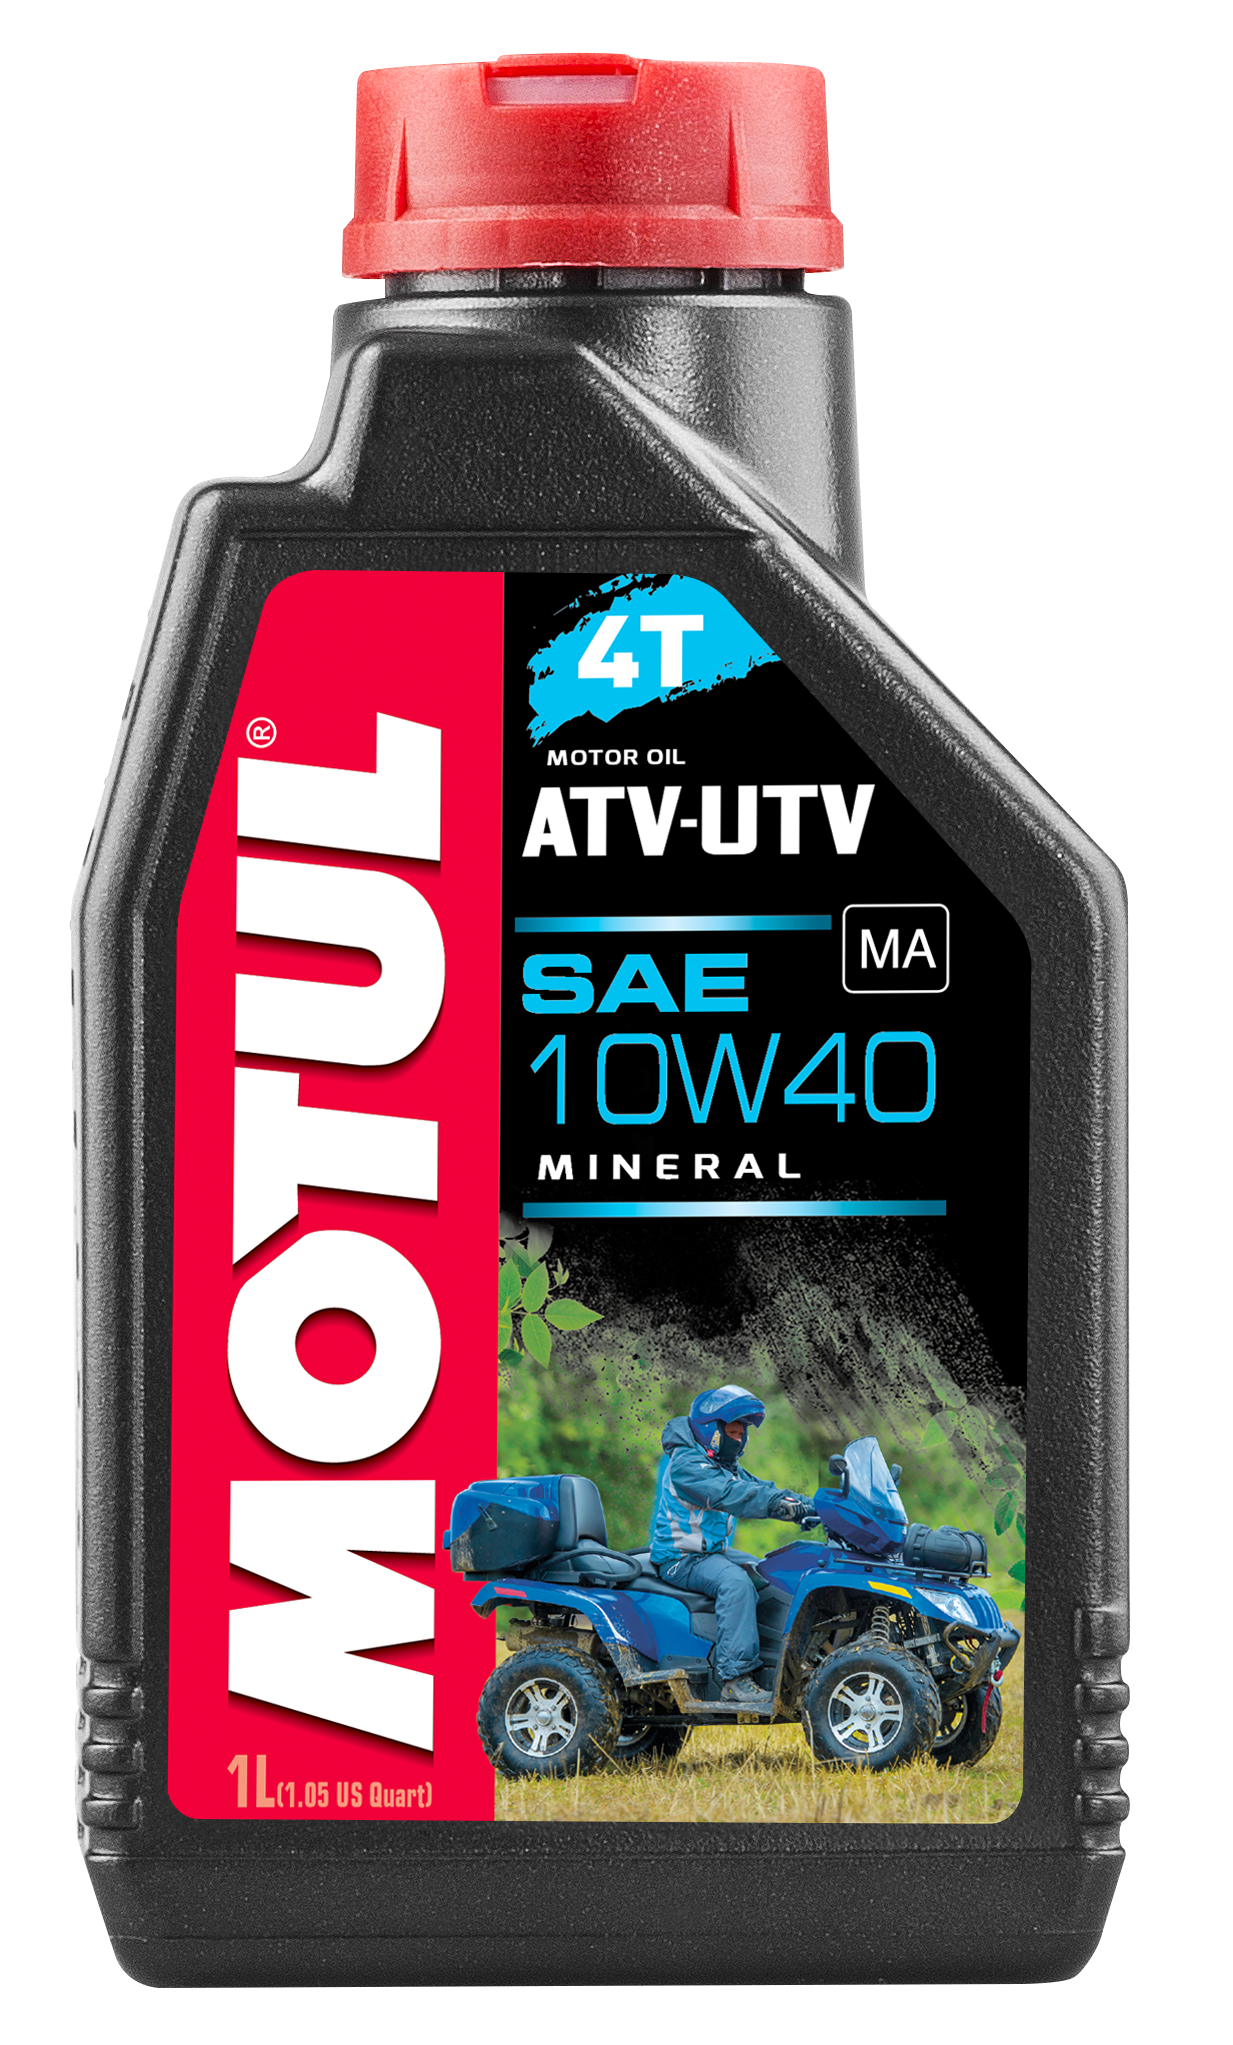 MOTUL ATV-UTV 4T SAE 10W-40